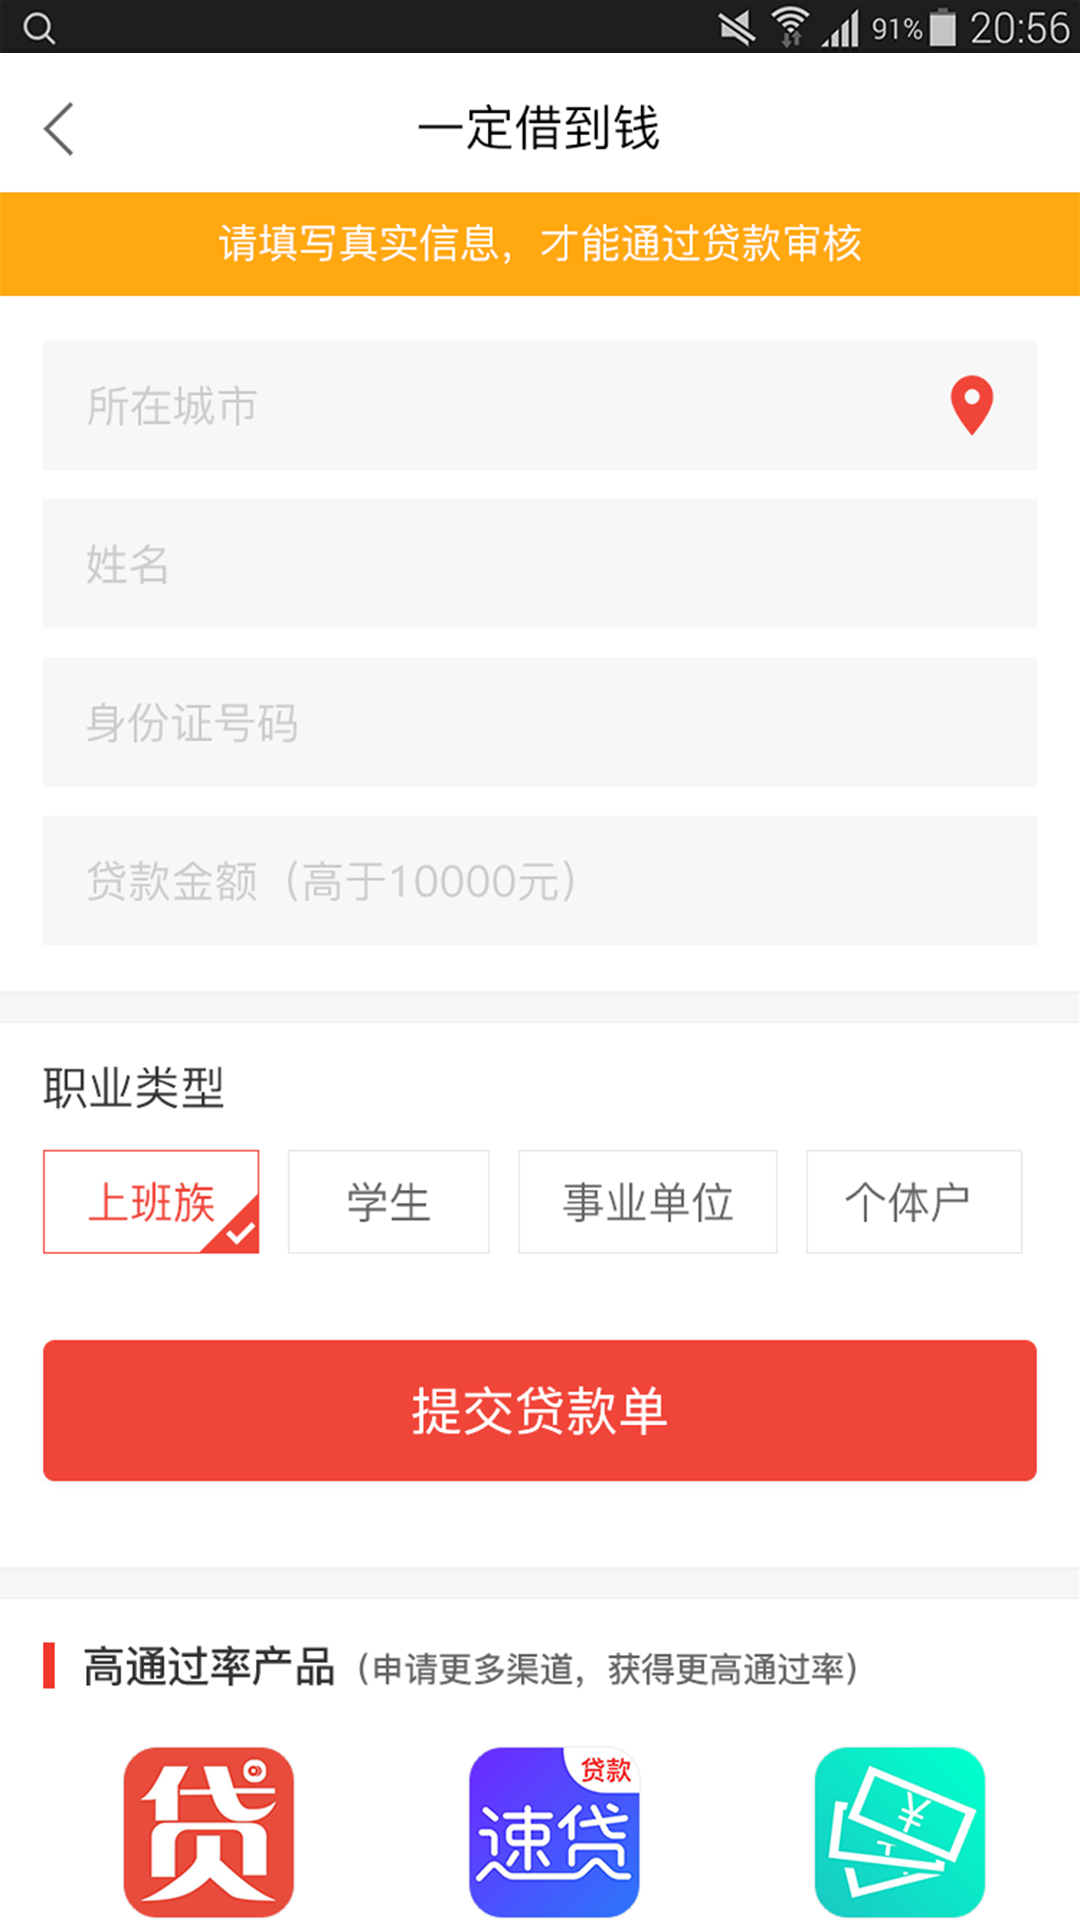 东风秒贷app借款下载手机版图片1